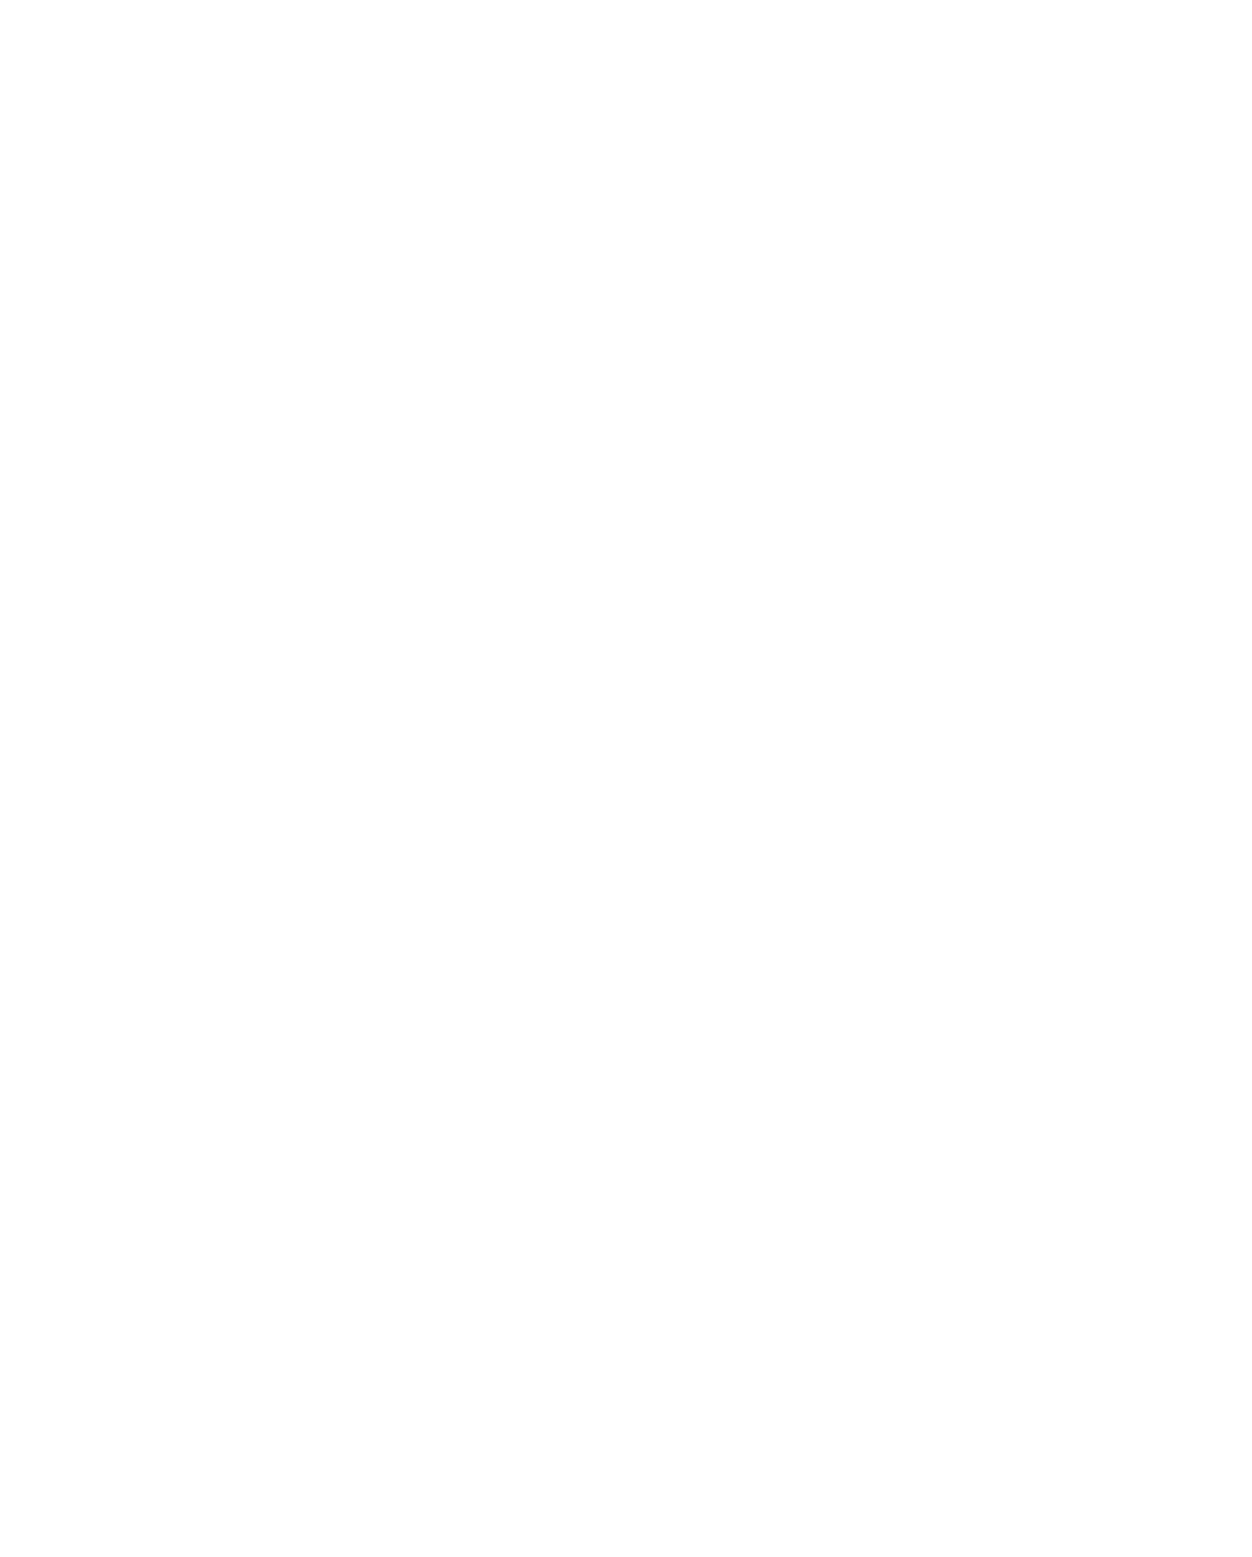 Shutterstock logo for dark backgrounds (transparent PNG)